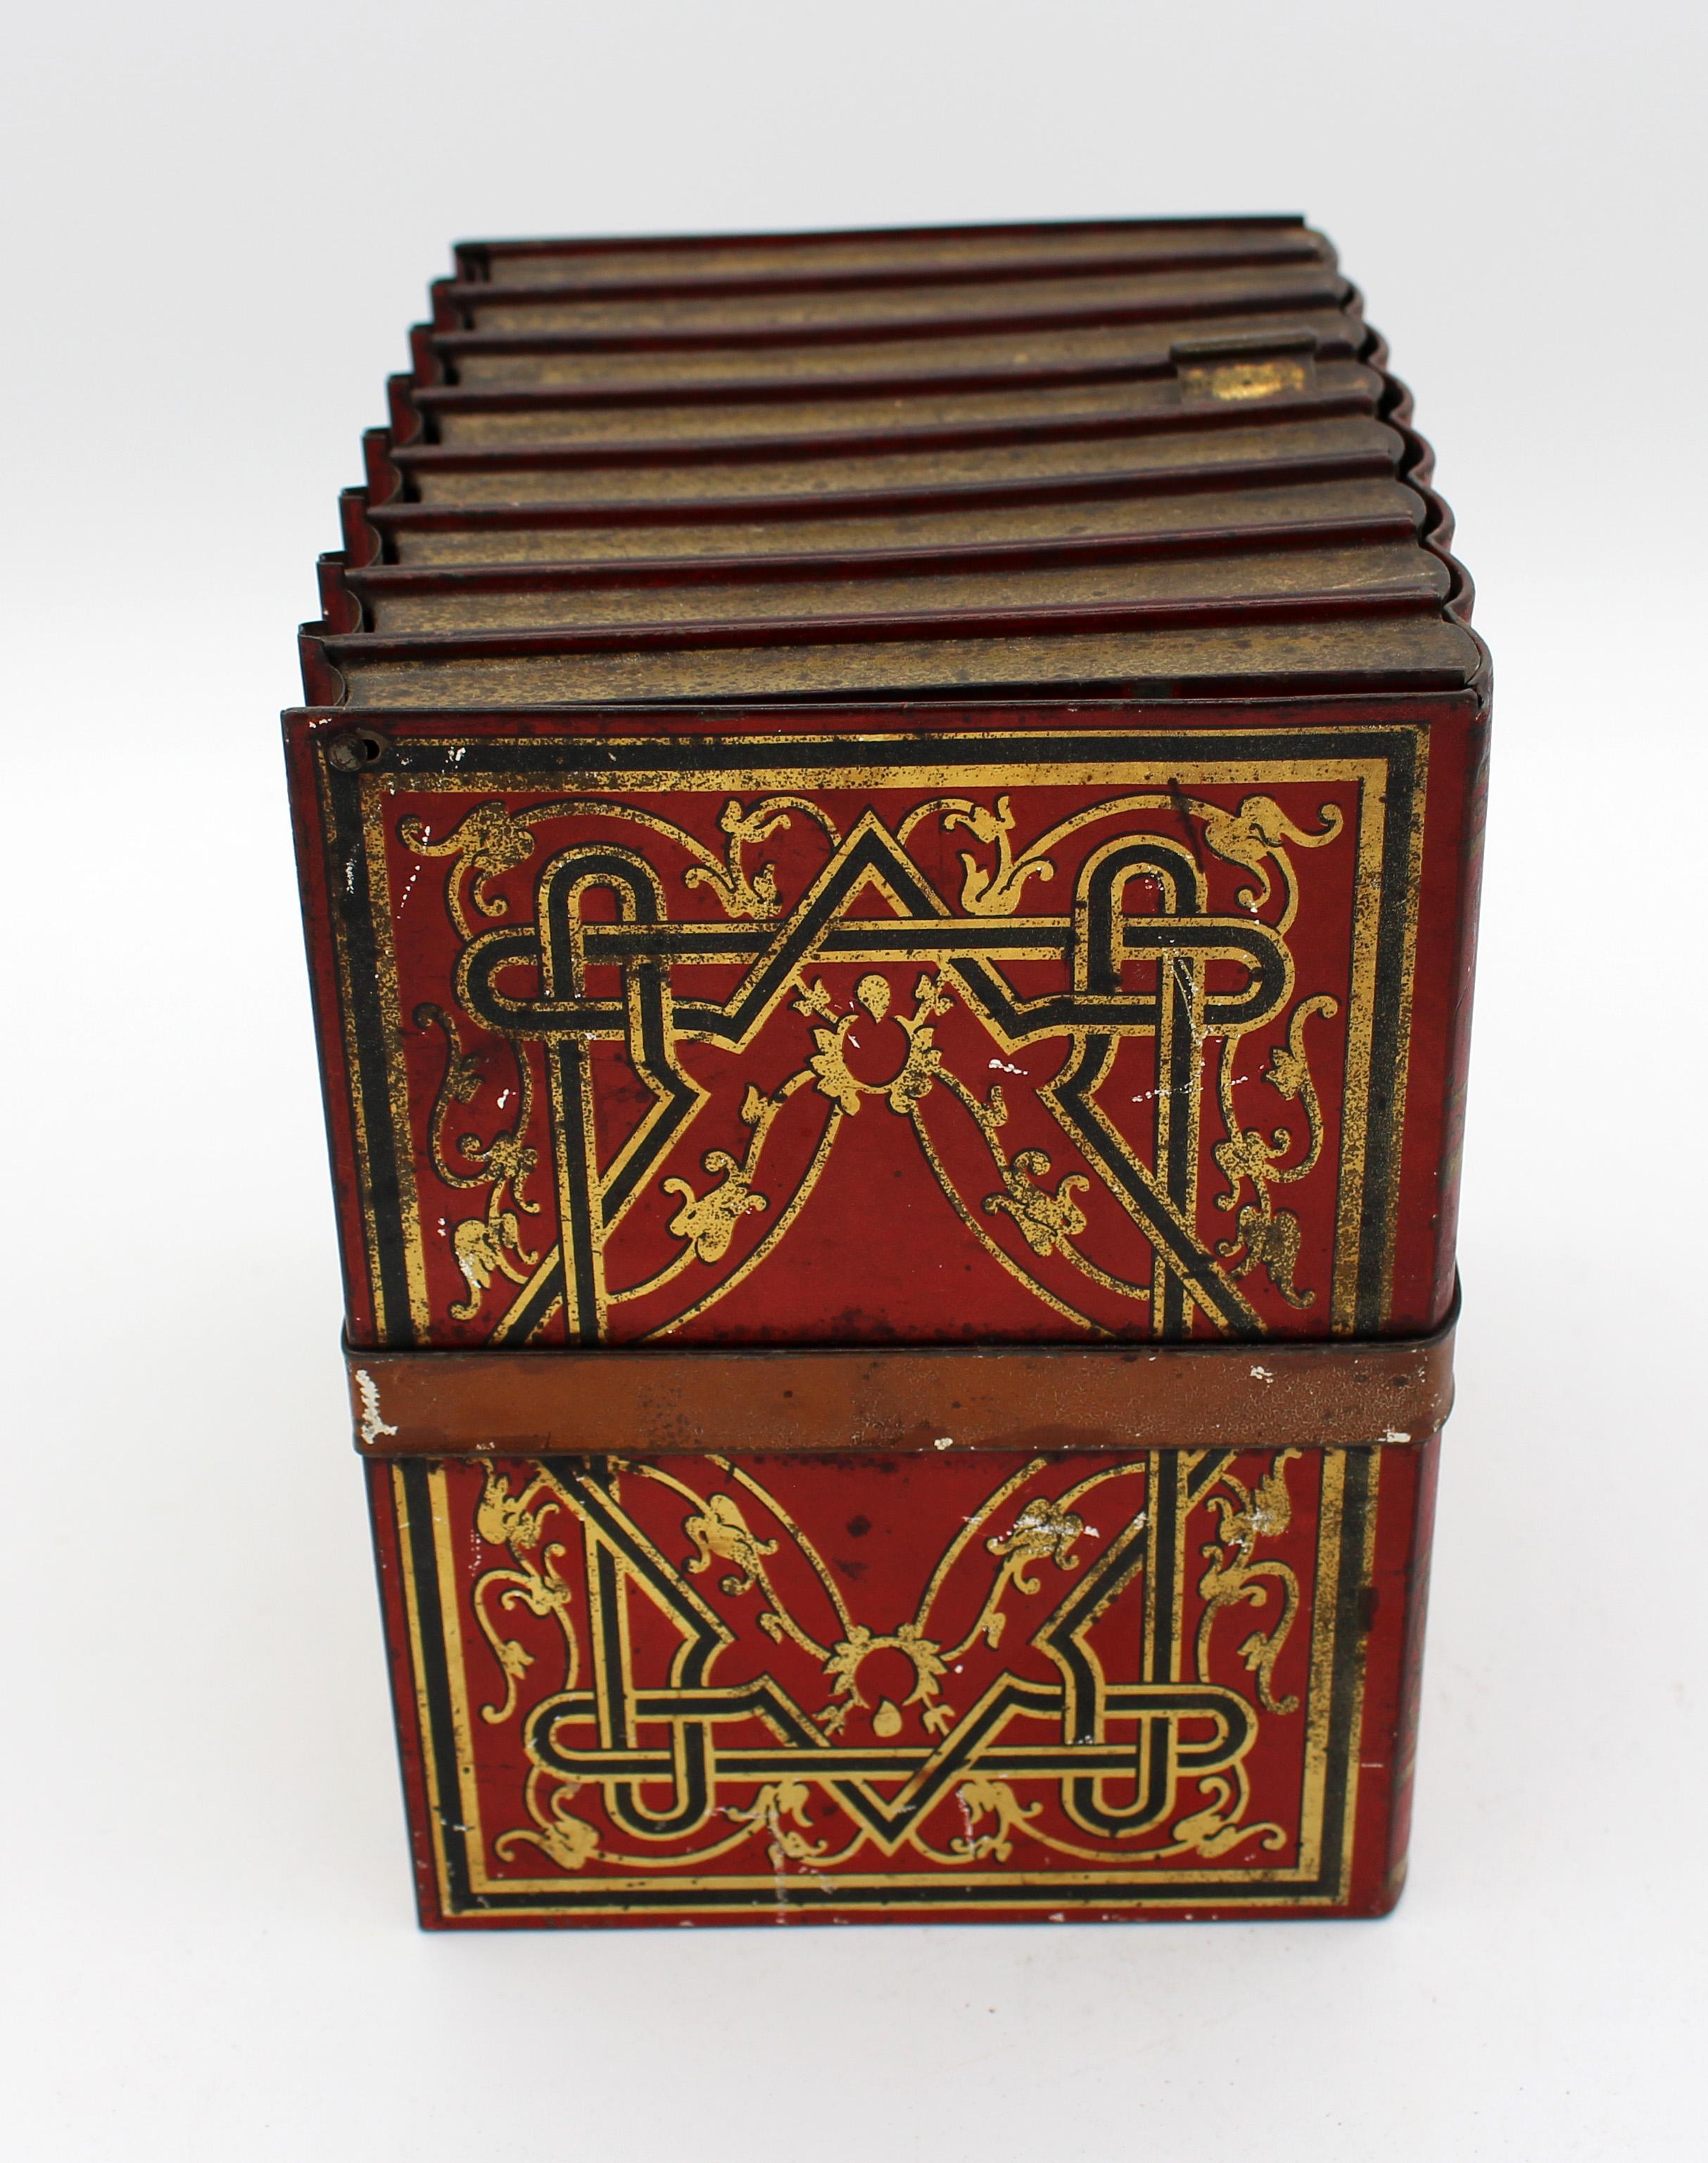 Faux Books Keksdose von Huntley & Palmers, 1910, Englisch. In der Form einer umgeschnallten Gruppe von generischen Büchern alte rot-schwarze Farbe mit vergoldeten Arbeiten und tan Band. Insgesamt alters- und gebrauchsgemäße Abnutzung.
6,5